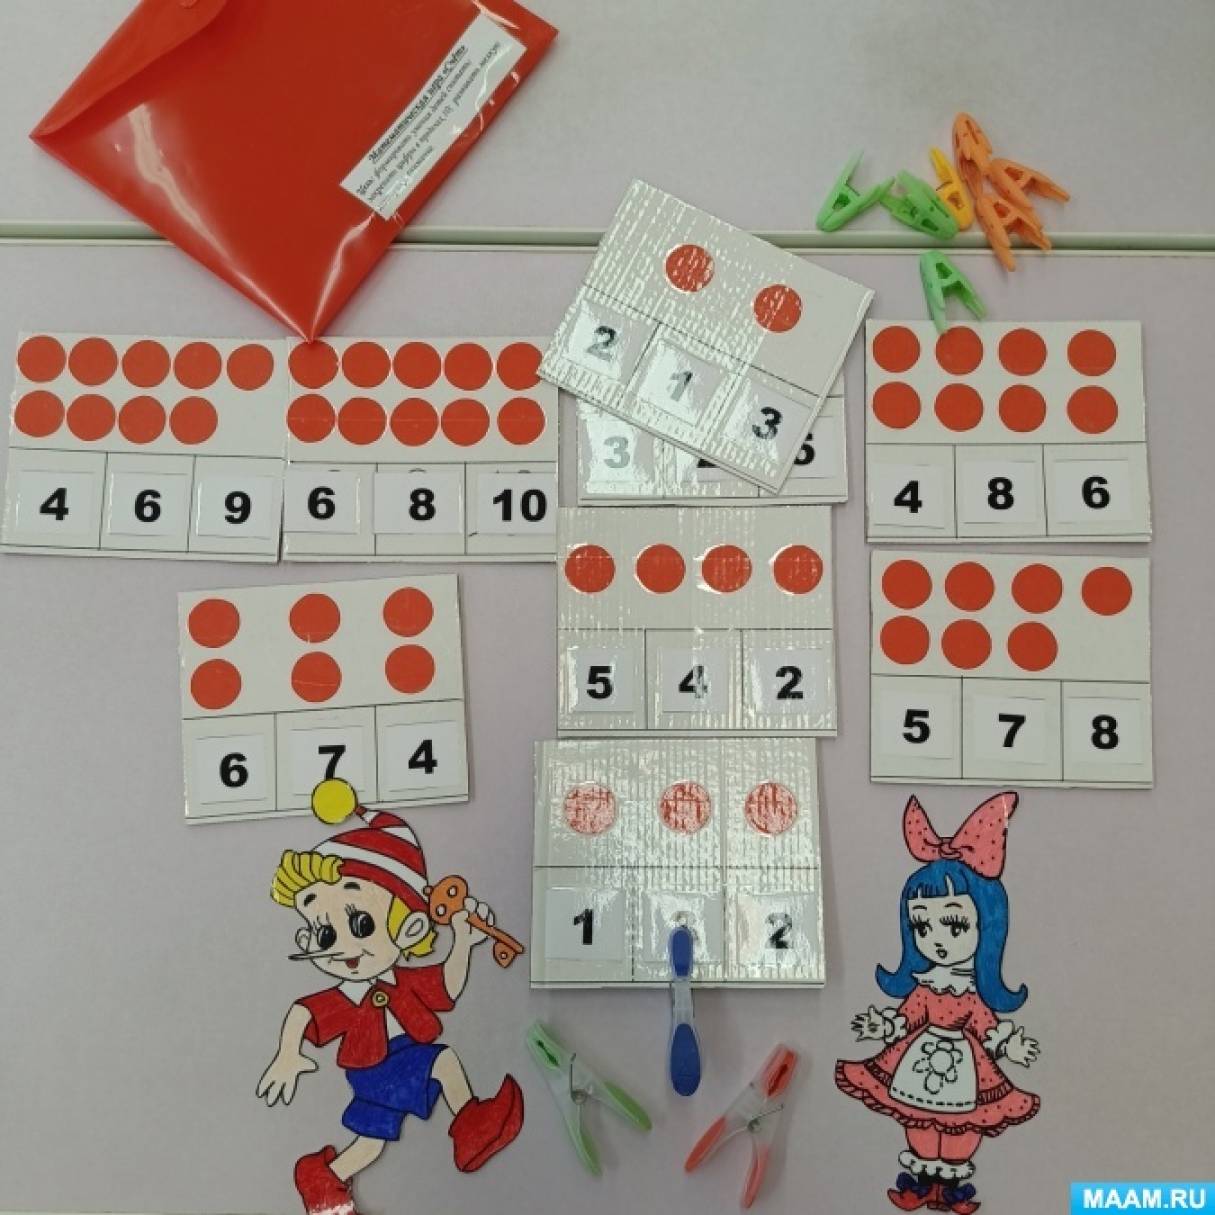 Игра с прищепками для детей счет скачать и распечатать шаблоны бесплатно